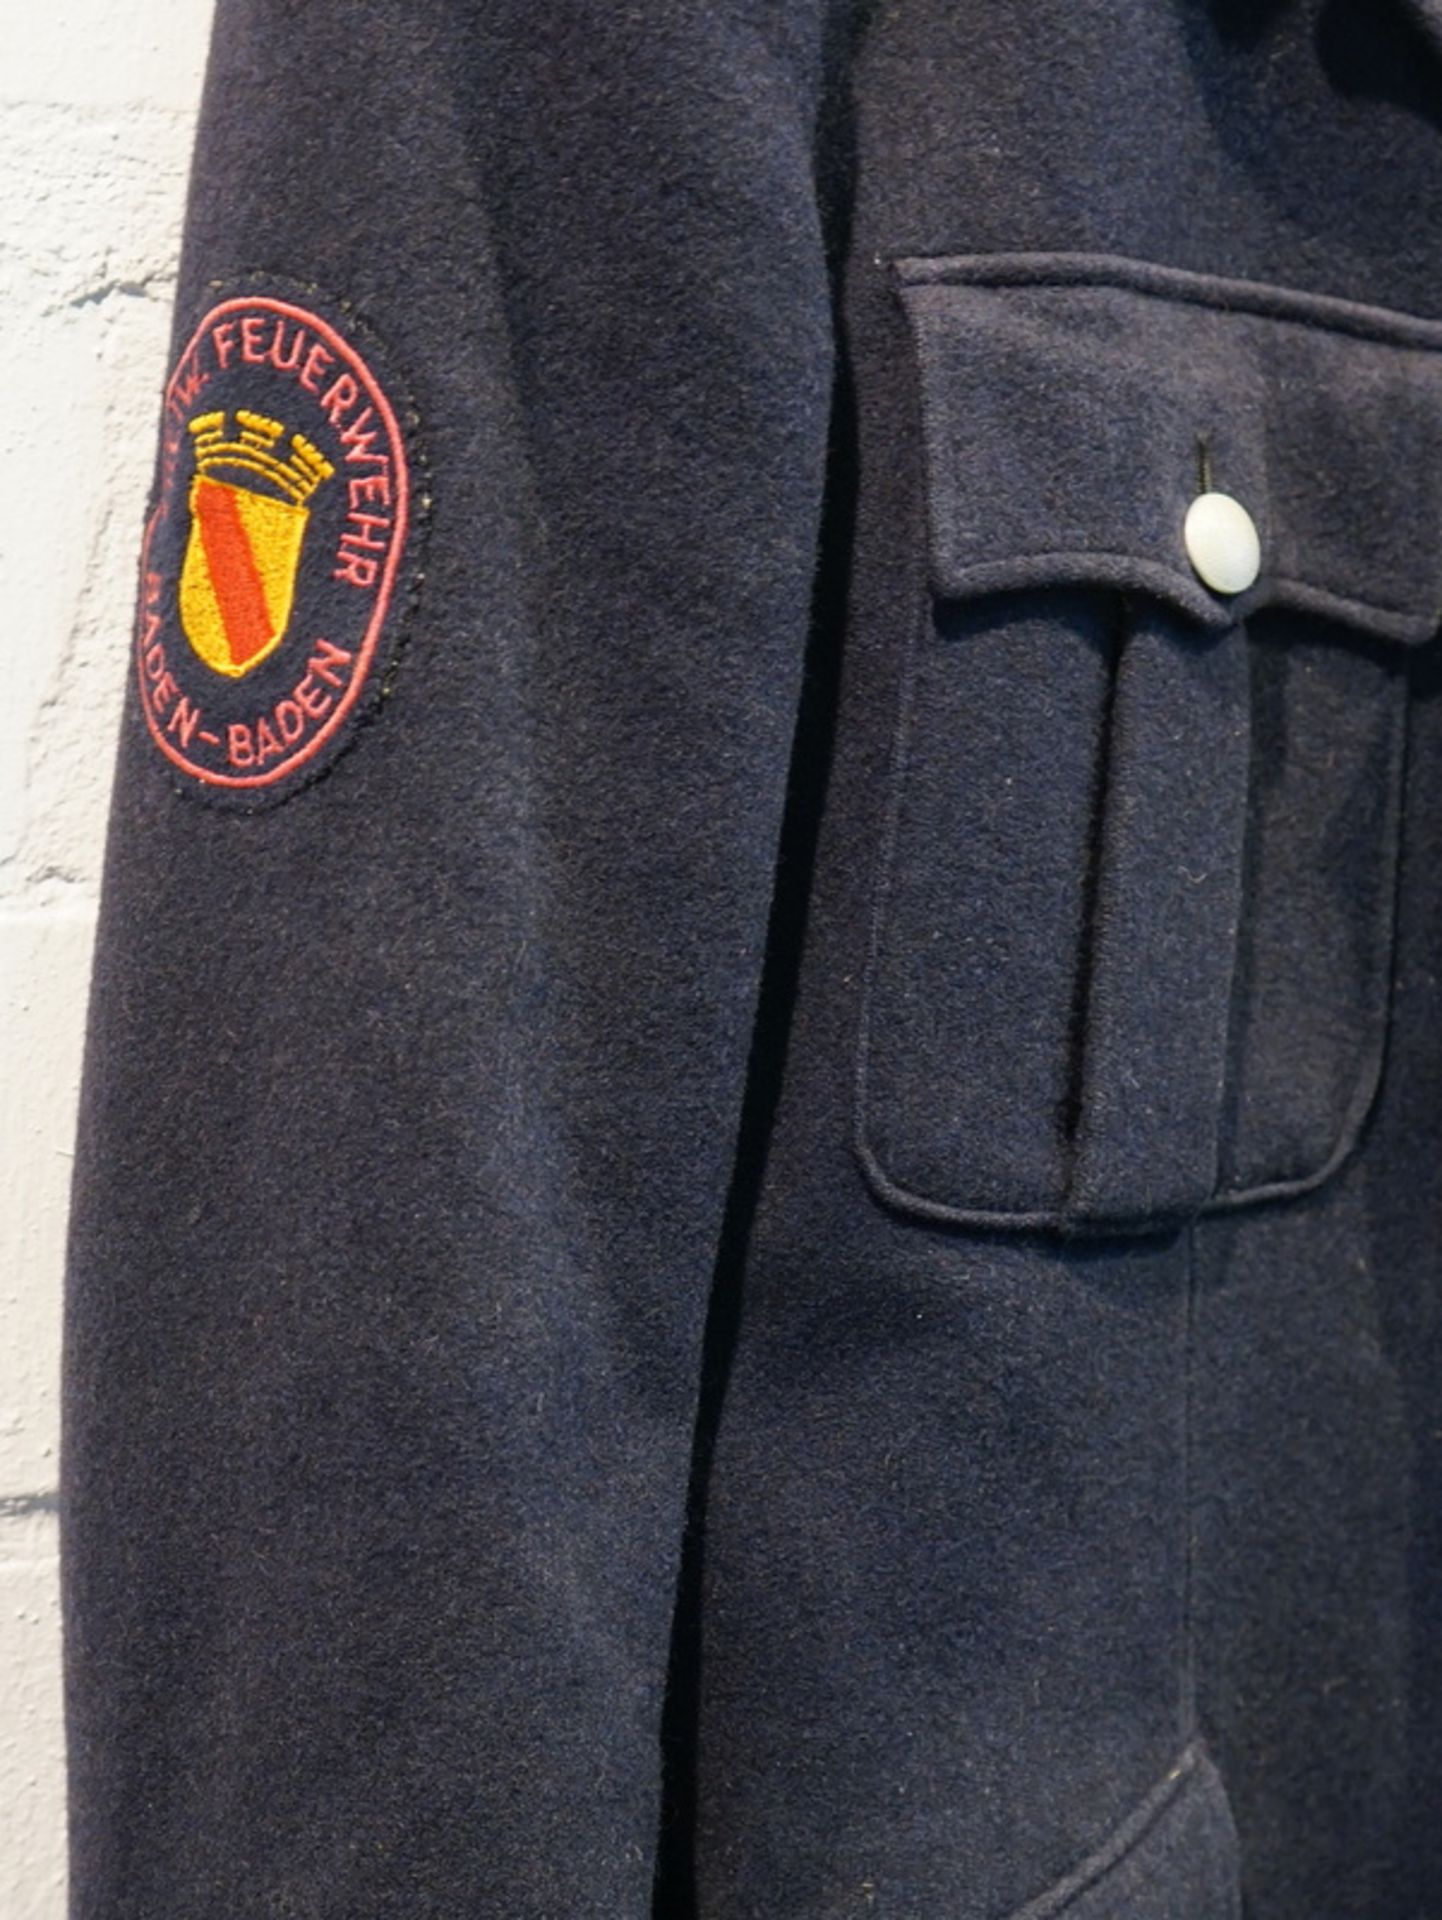 Feuerwehruniform, Brandmeister der Feuerwehr Baden-Baden, 1936 - Image 4 of 4